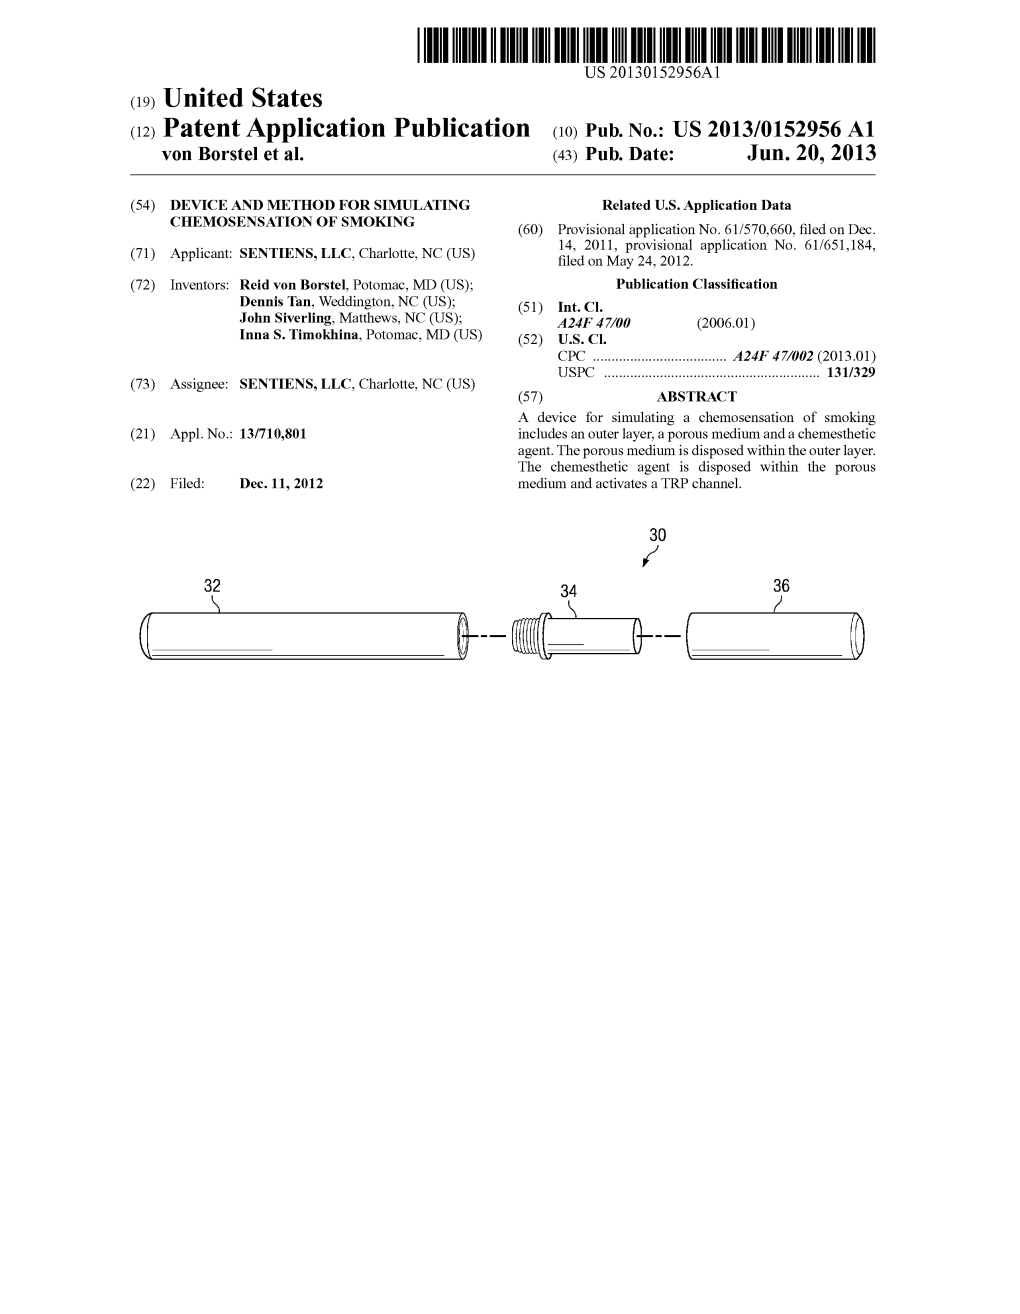 (12) Patent Application Publication (10) Pub. No.: US 2013/0152956A1 Von Borstel Et Al